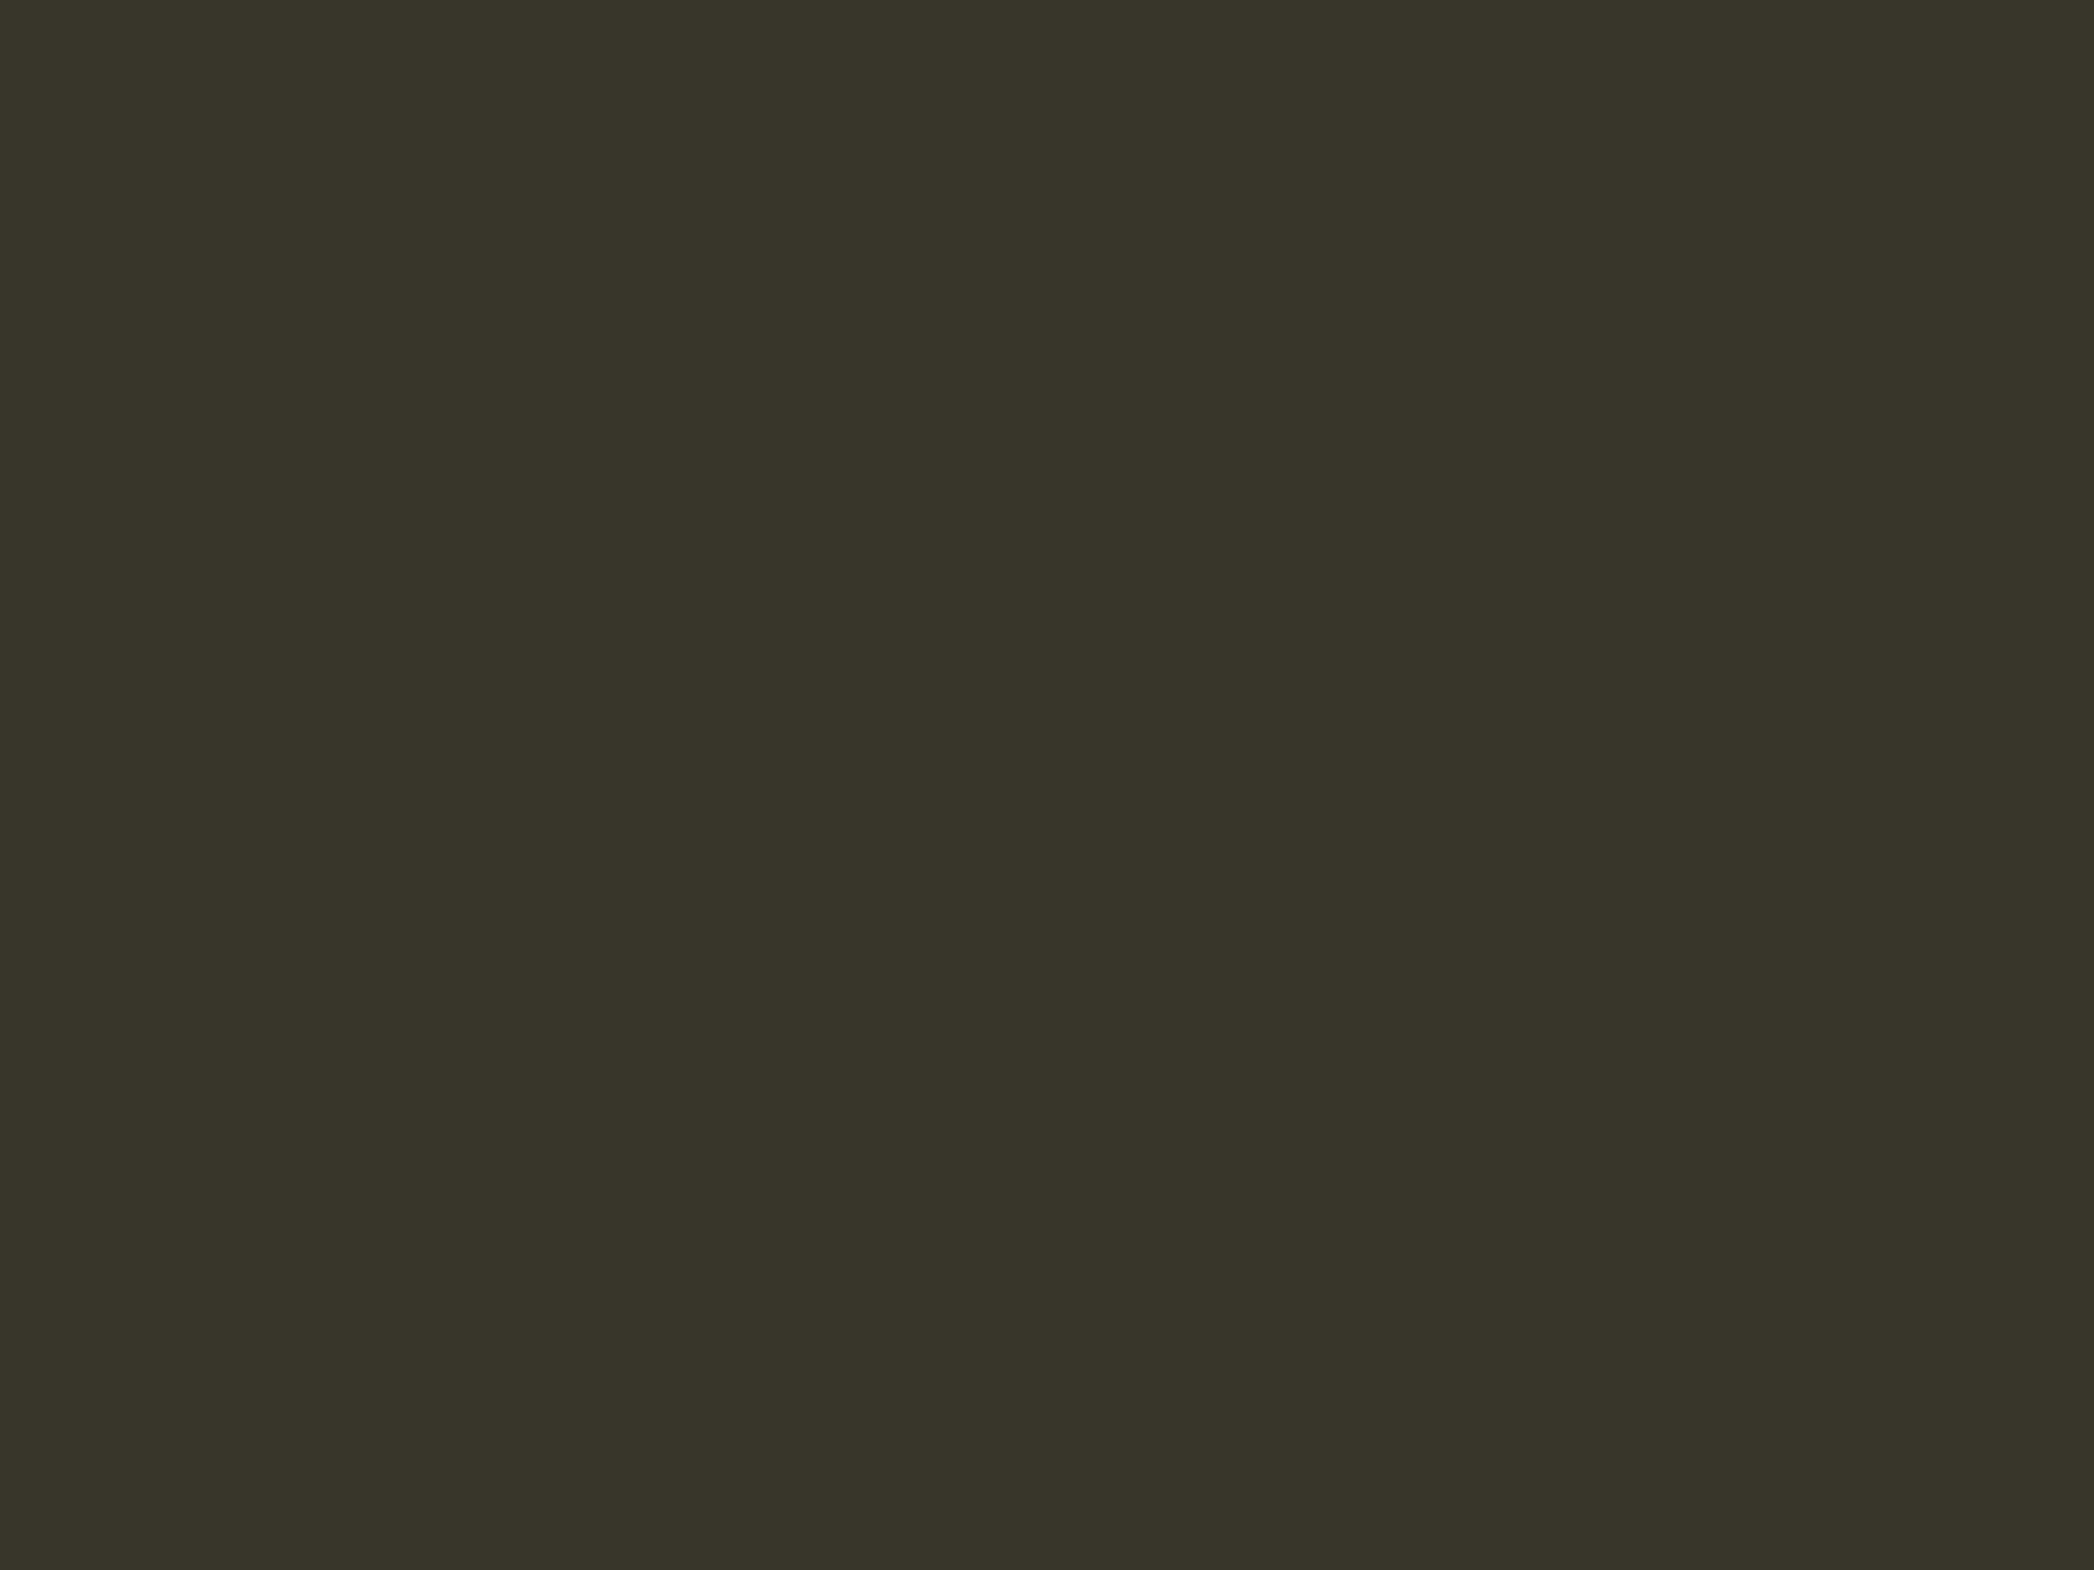 Константин Маковский. Демон и Тамара (фрагмент). 1889. Серпуховский историко-художественный музей, Серпухов, Московская область